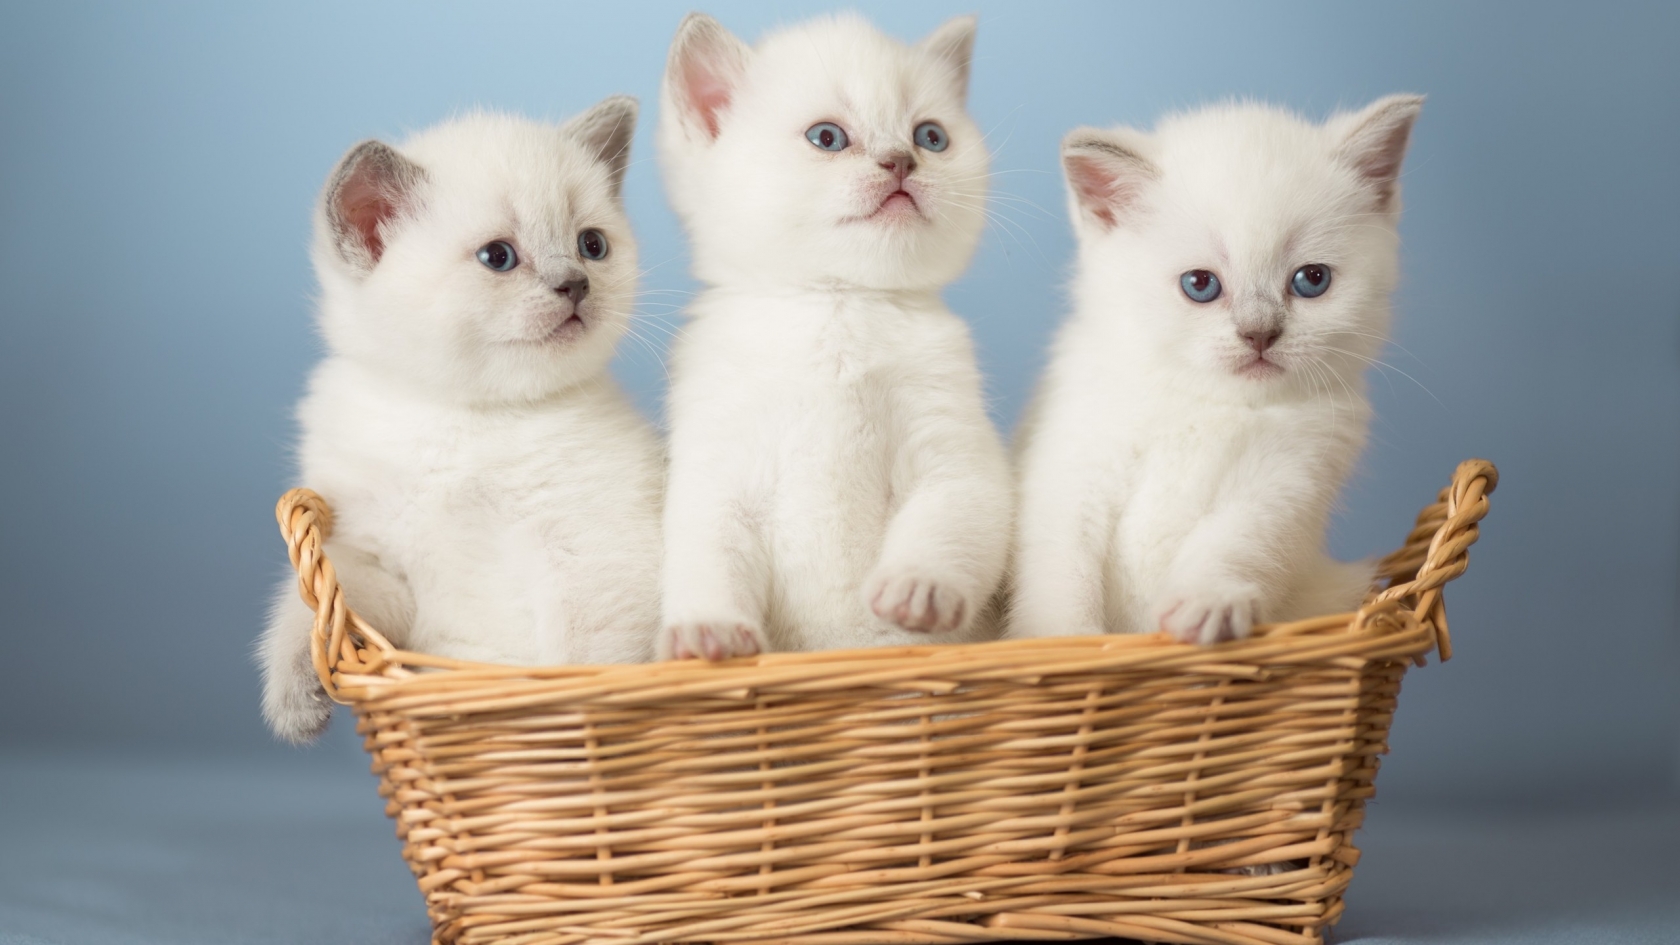 White Kittens for 1680 x 945 HDTV resolution